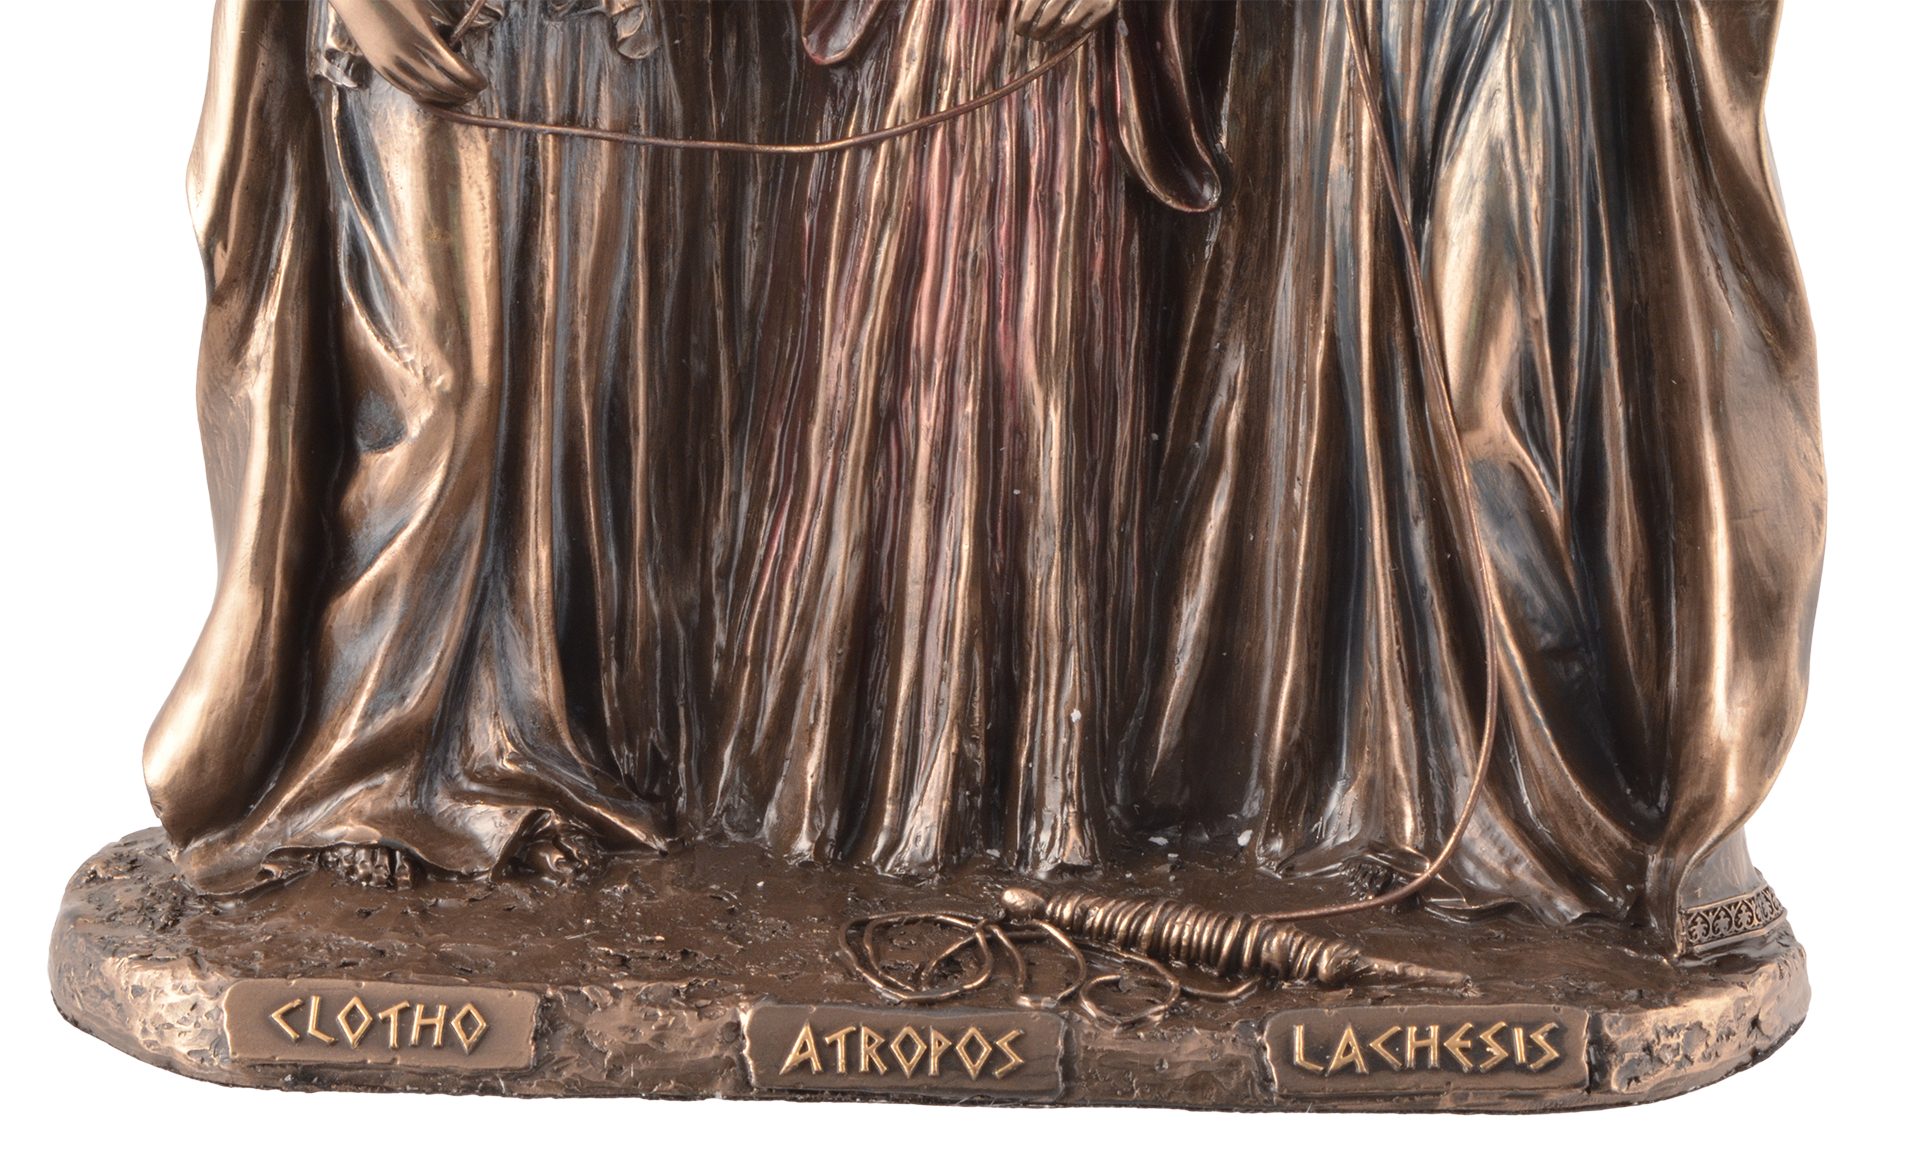 Vogler direct Gmbh Dekofigur Veronese, bronziert, LxBxH by Hand griechische ca. 18x8x19cm von Schicksalsgöttinen Details wurden Moiren, 